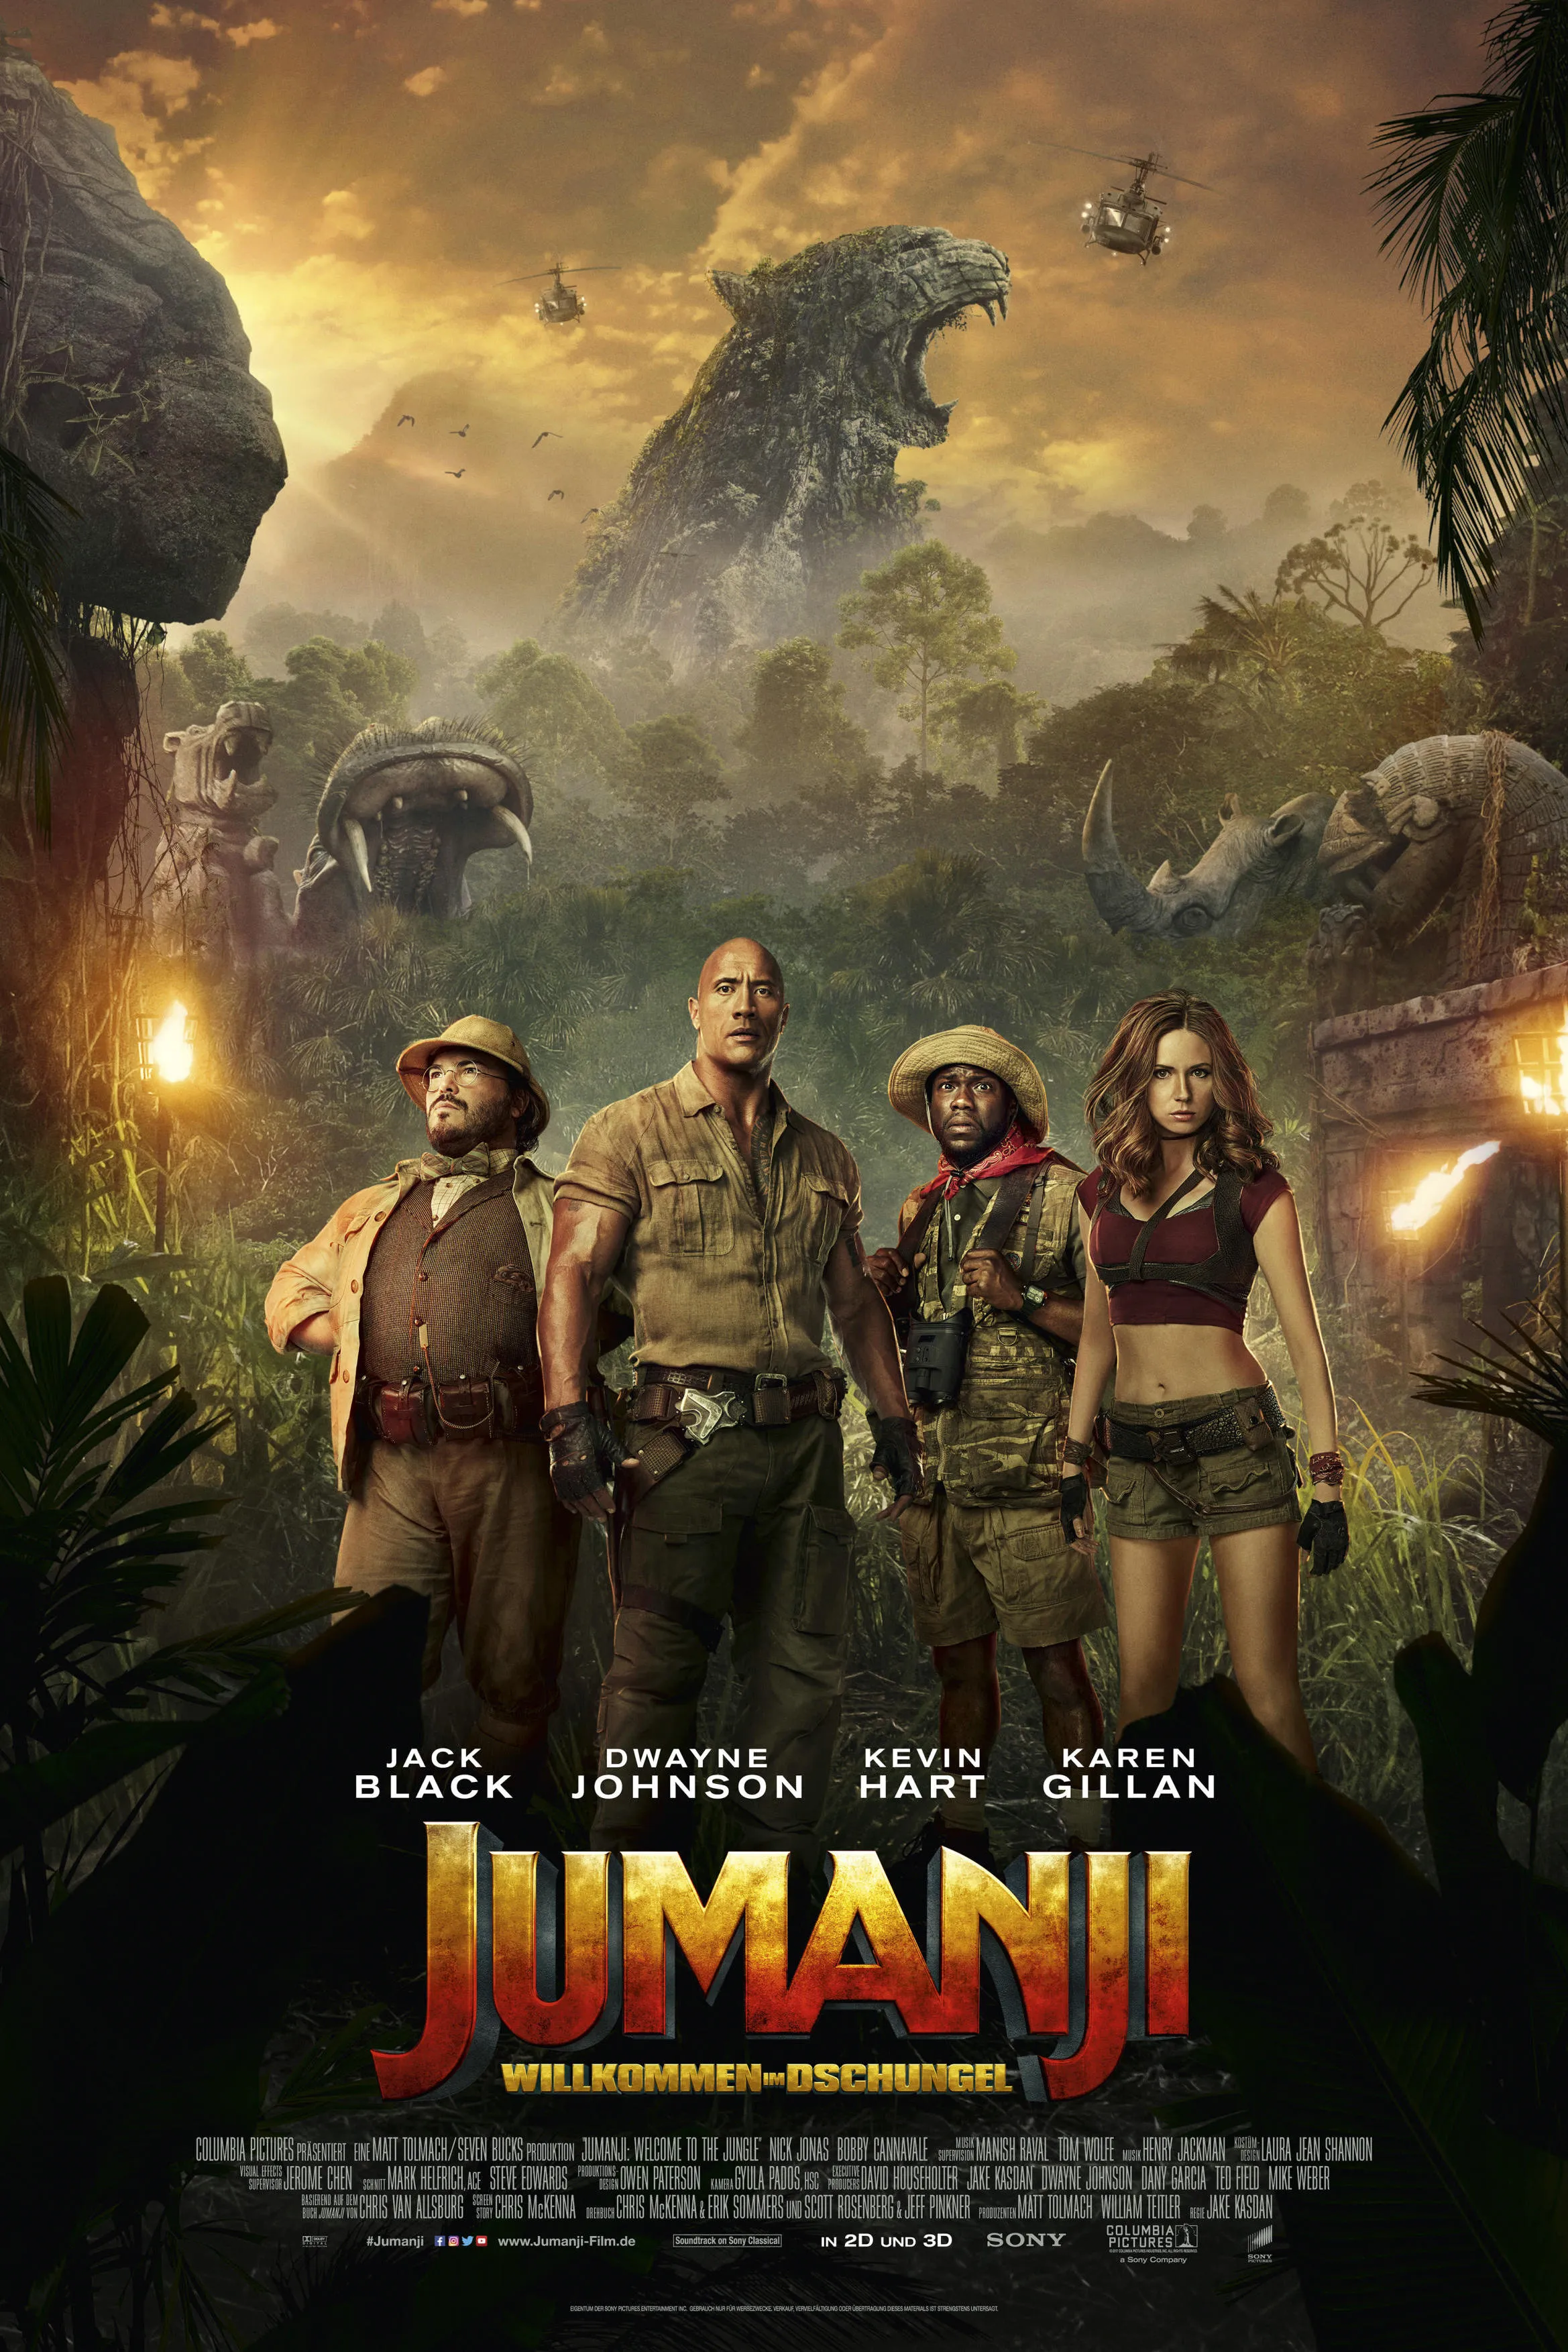 Jungle (2017) - IMDb